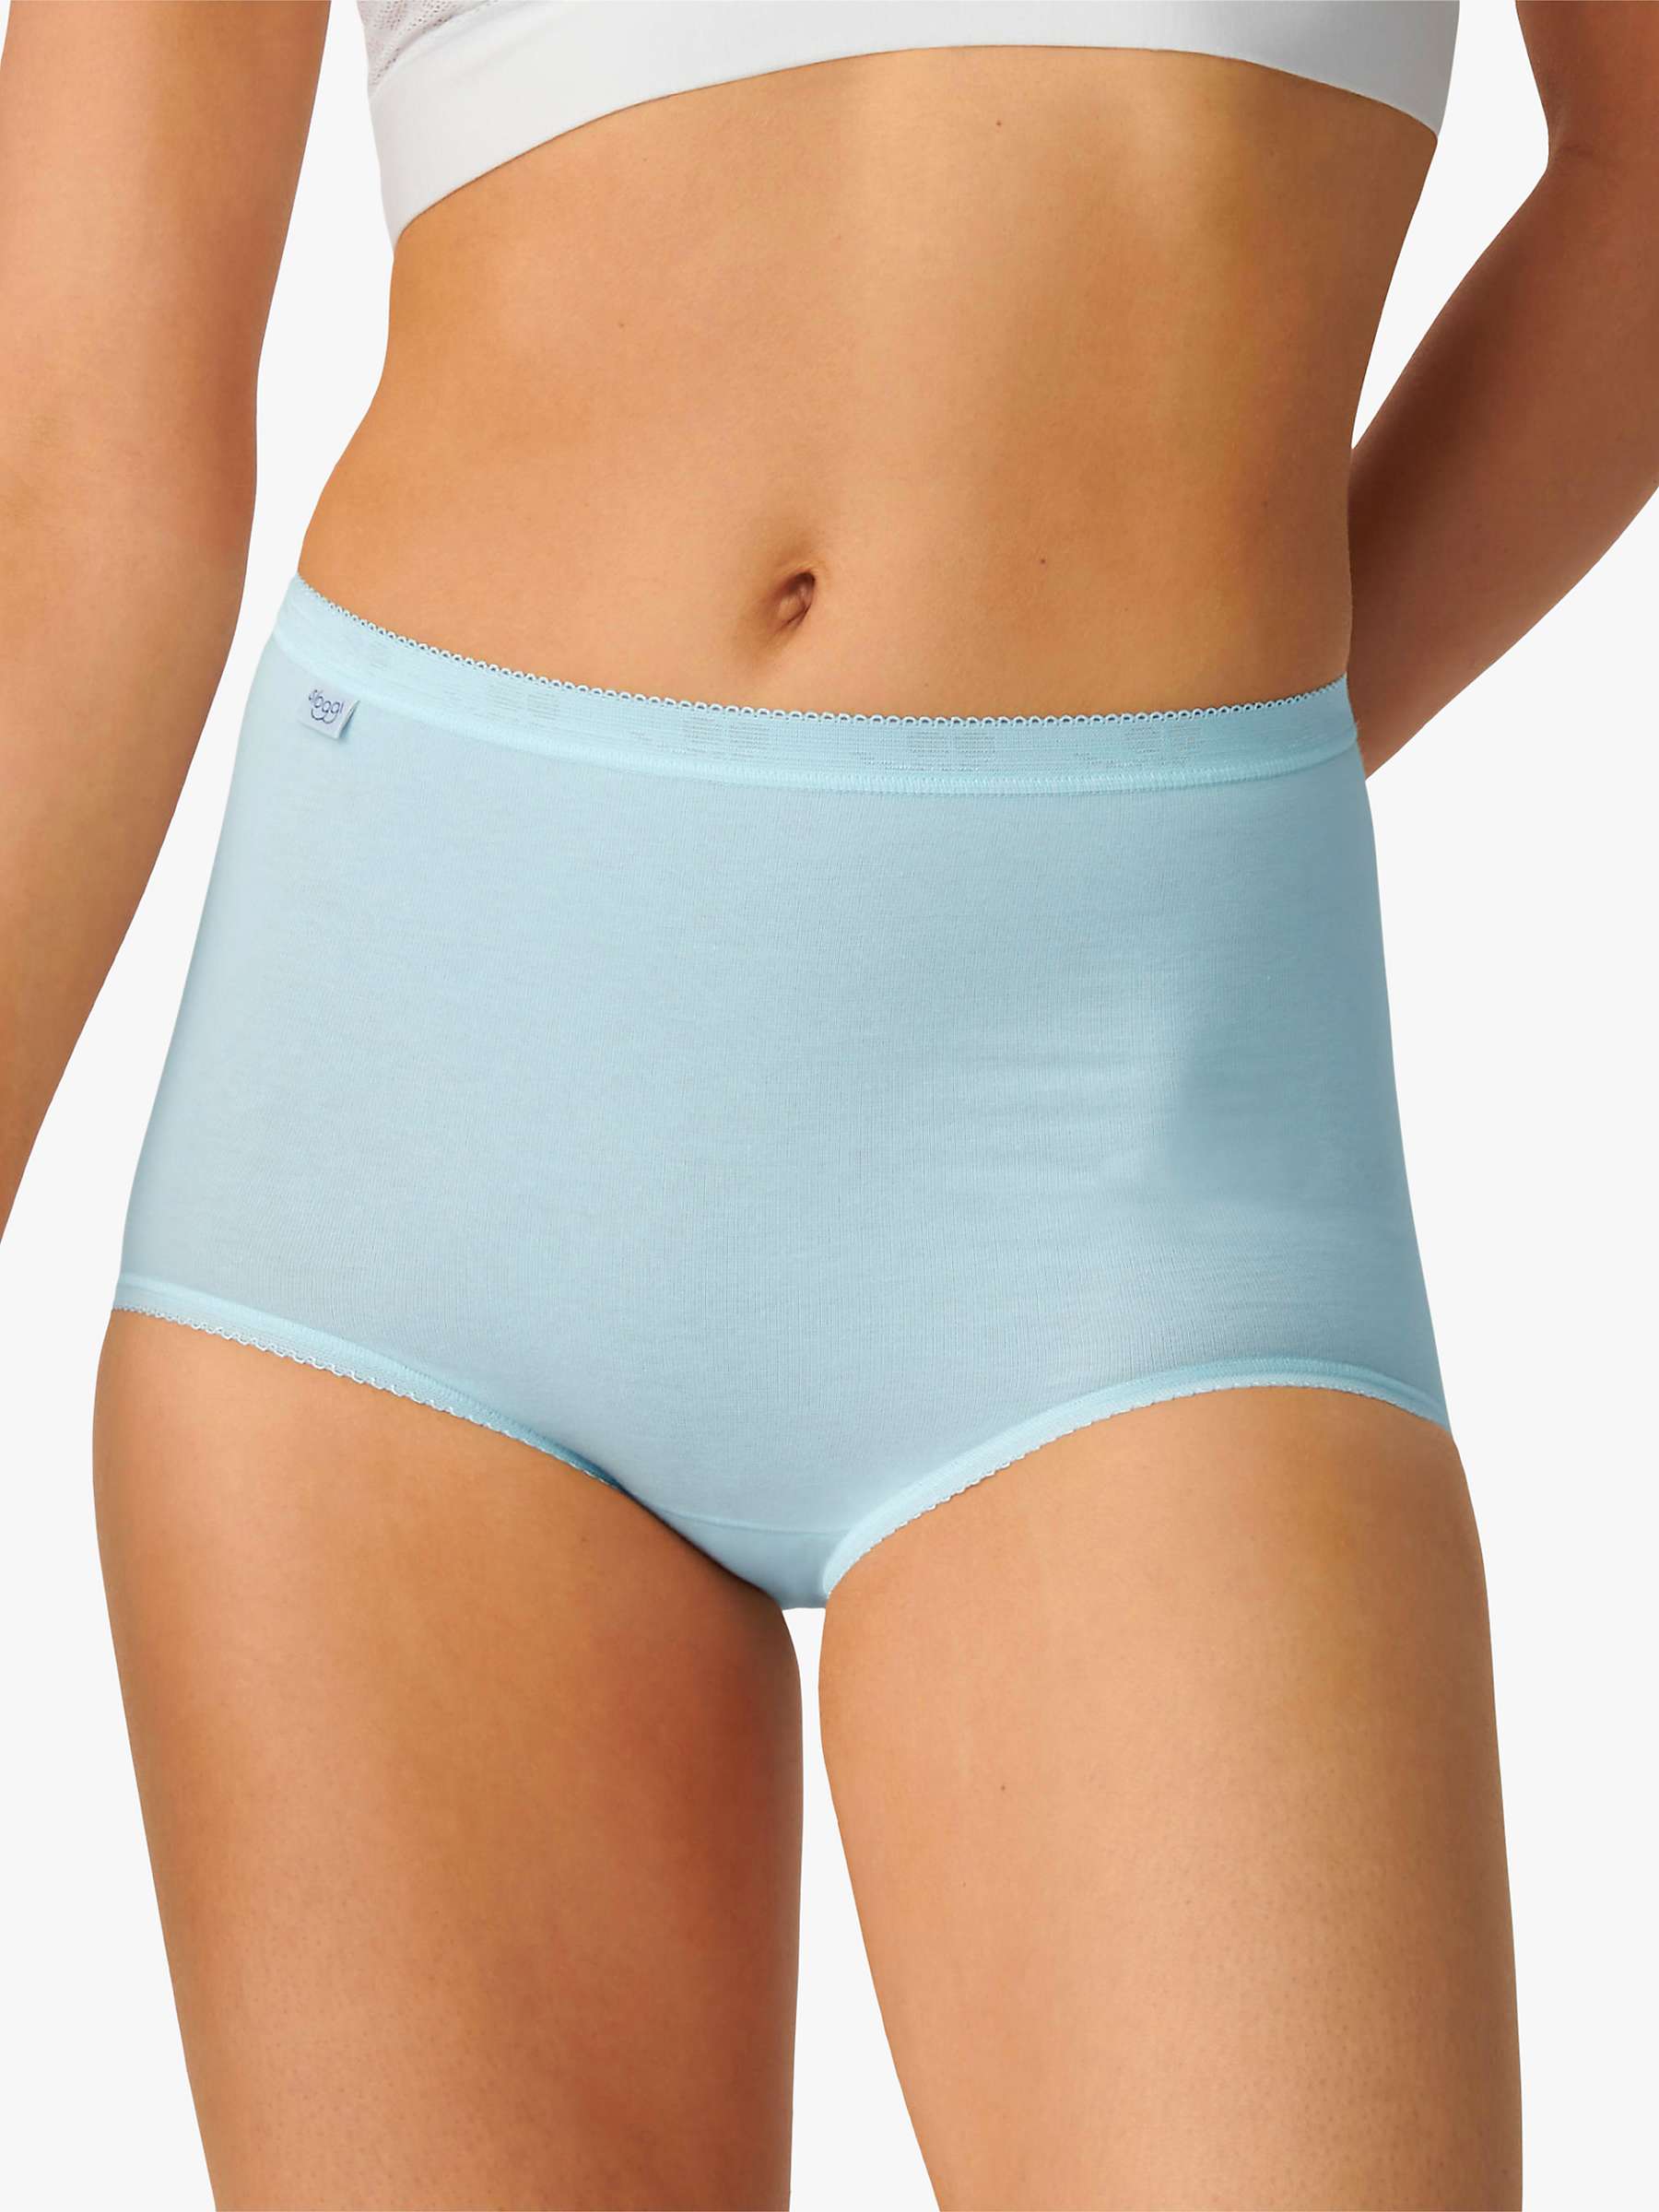 VOGI Underwear Women's Cotton Stretch High Waist Full Coverage Briefs 3 Pack 